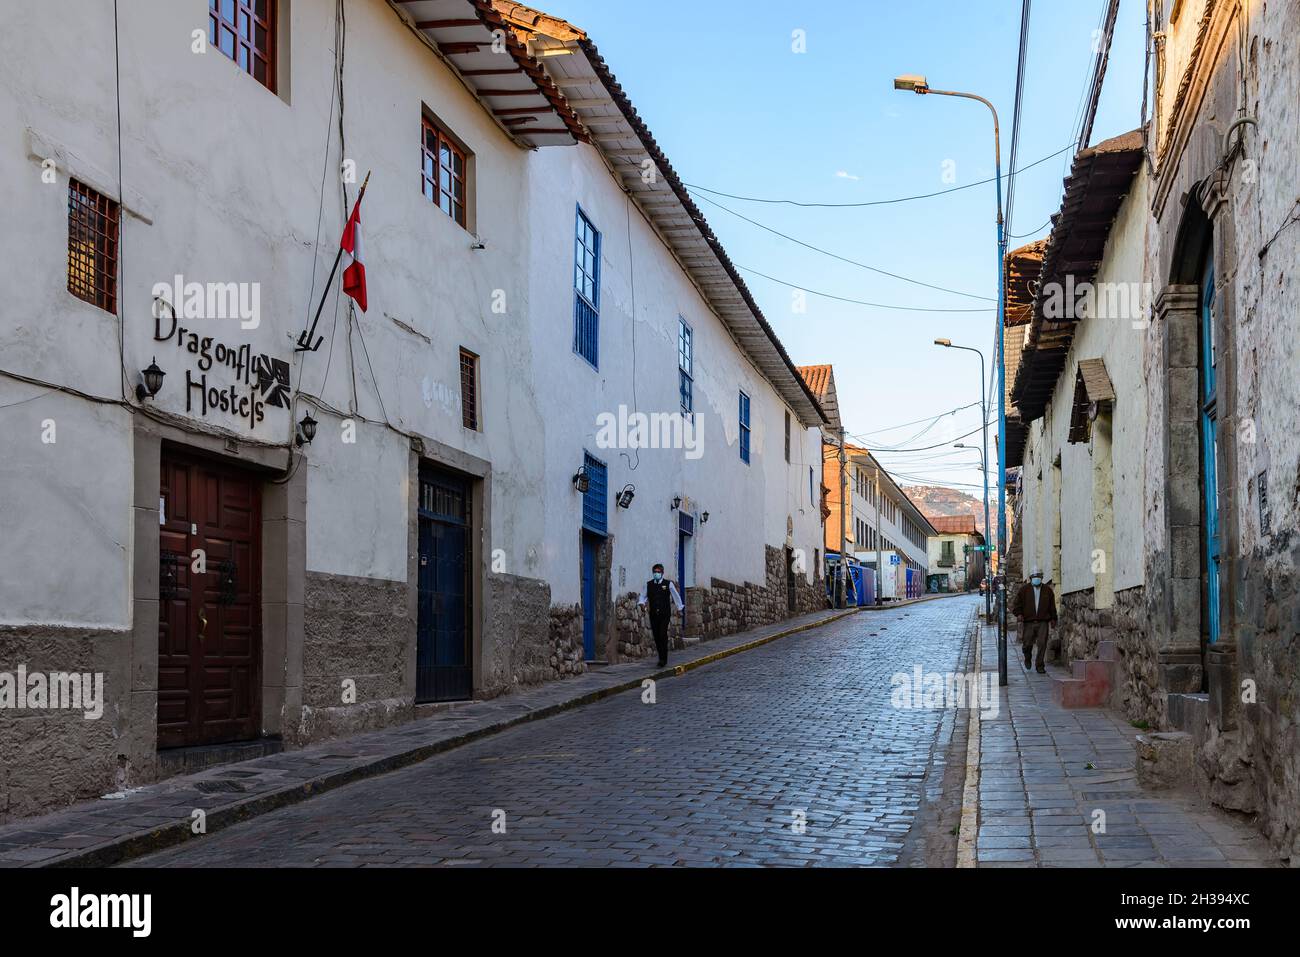 Rue pavée en pierre étroite et en galets de la vieille ville historique de Cuzco, Pérou. Banque D'Images